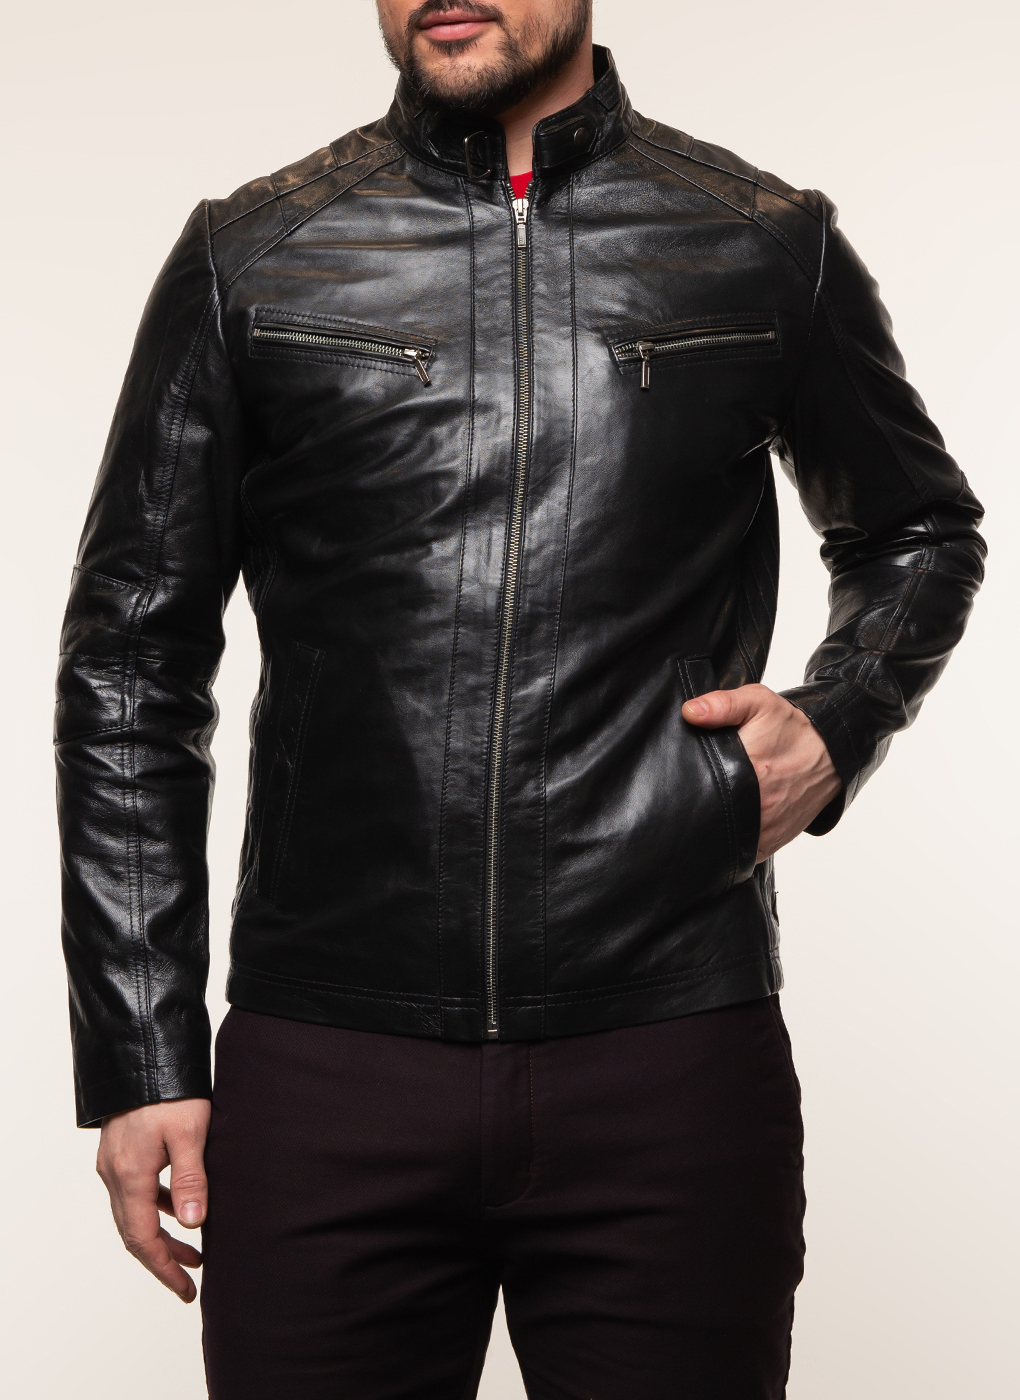 Кожаная куртка мужская Каляев 62647 черная 54 RU